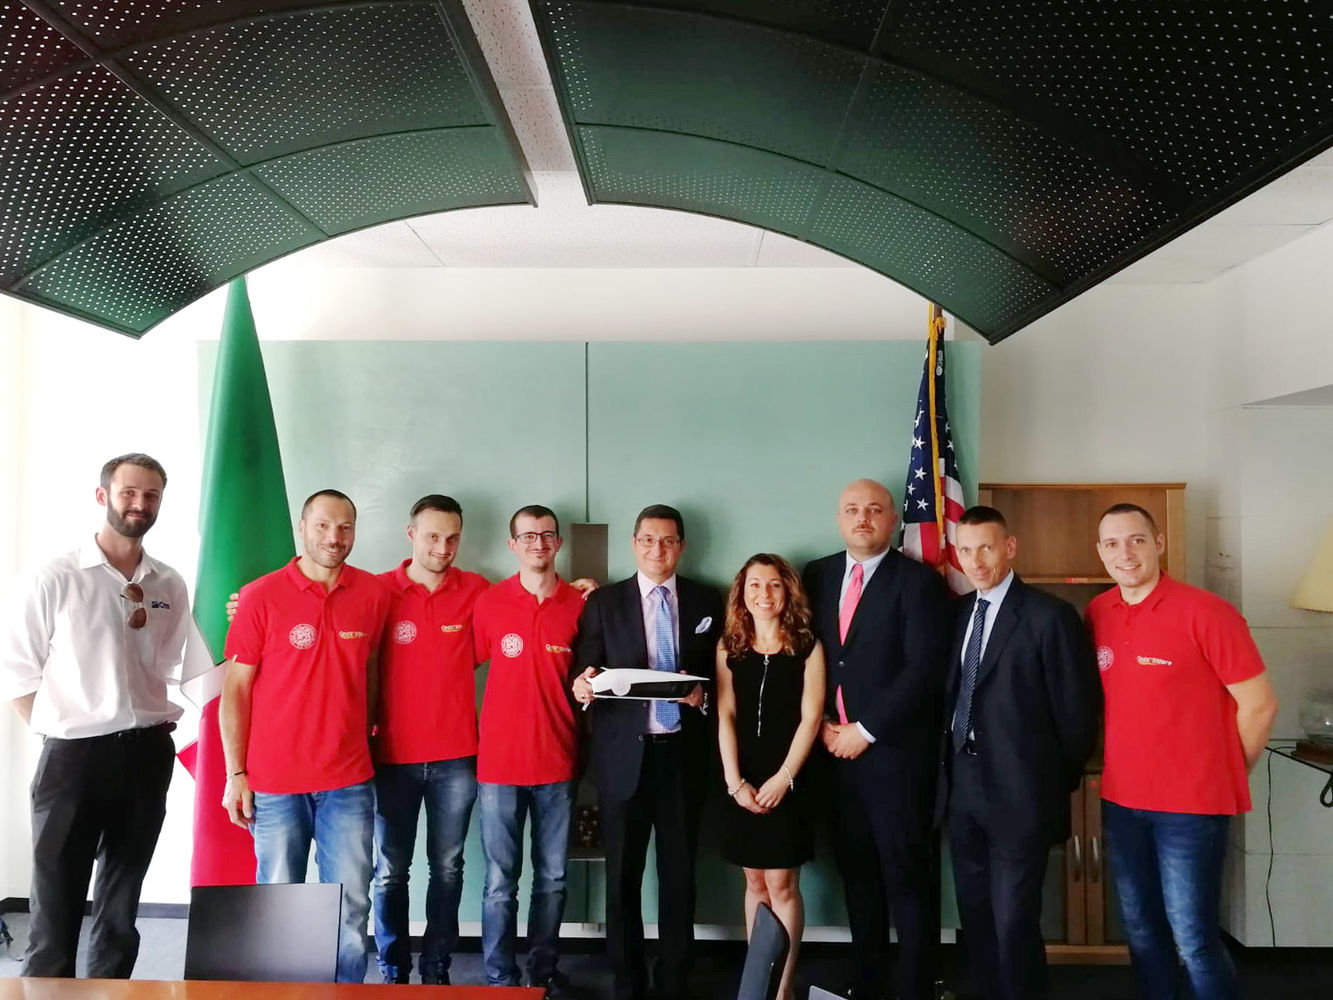 Scm Group e Cms visitam o consulado italiano em Chicago com a equipe Onda Solare